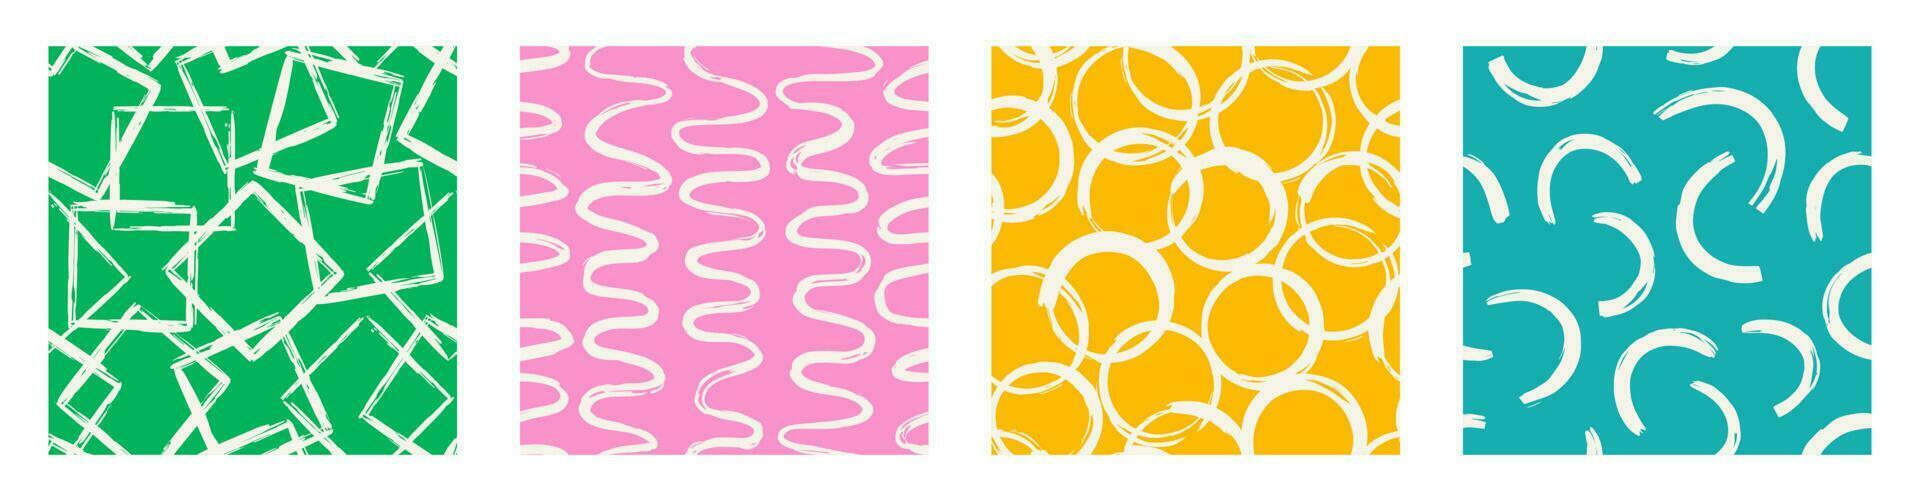 conjunto de padrão imprimível contemporâneo estético com formas de traçado de pincel de linha elegante mínima abstrata e linha em cores vibrantes. vetor